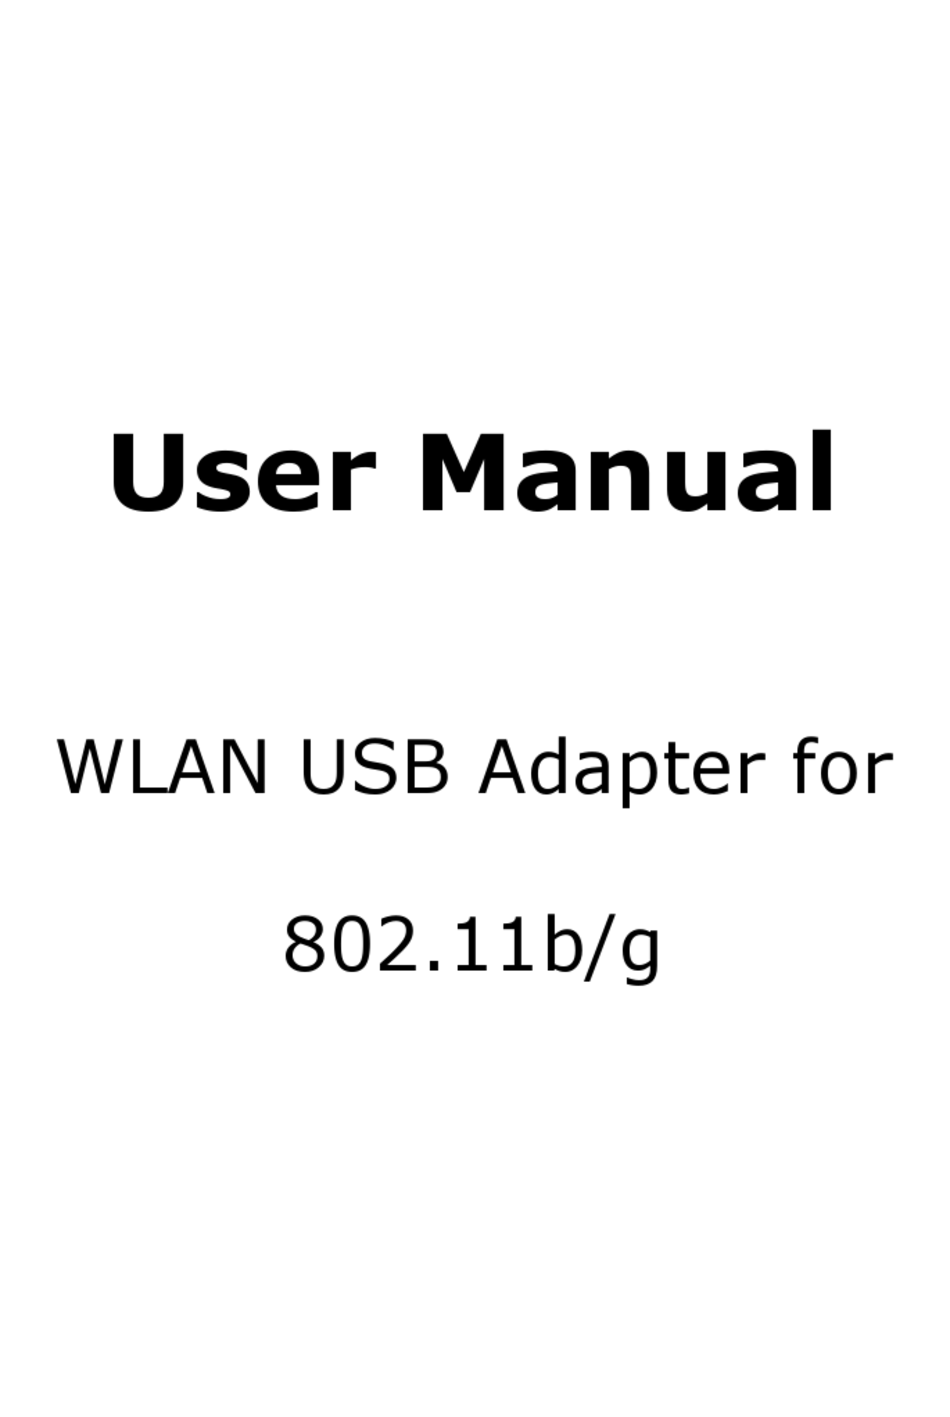 download ralink rt2870 wireless lan driver